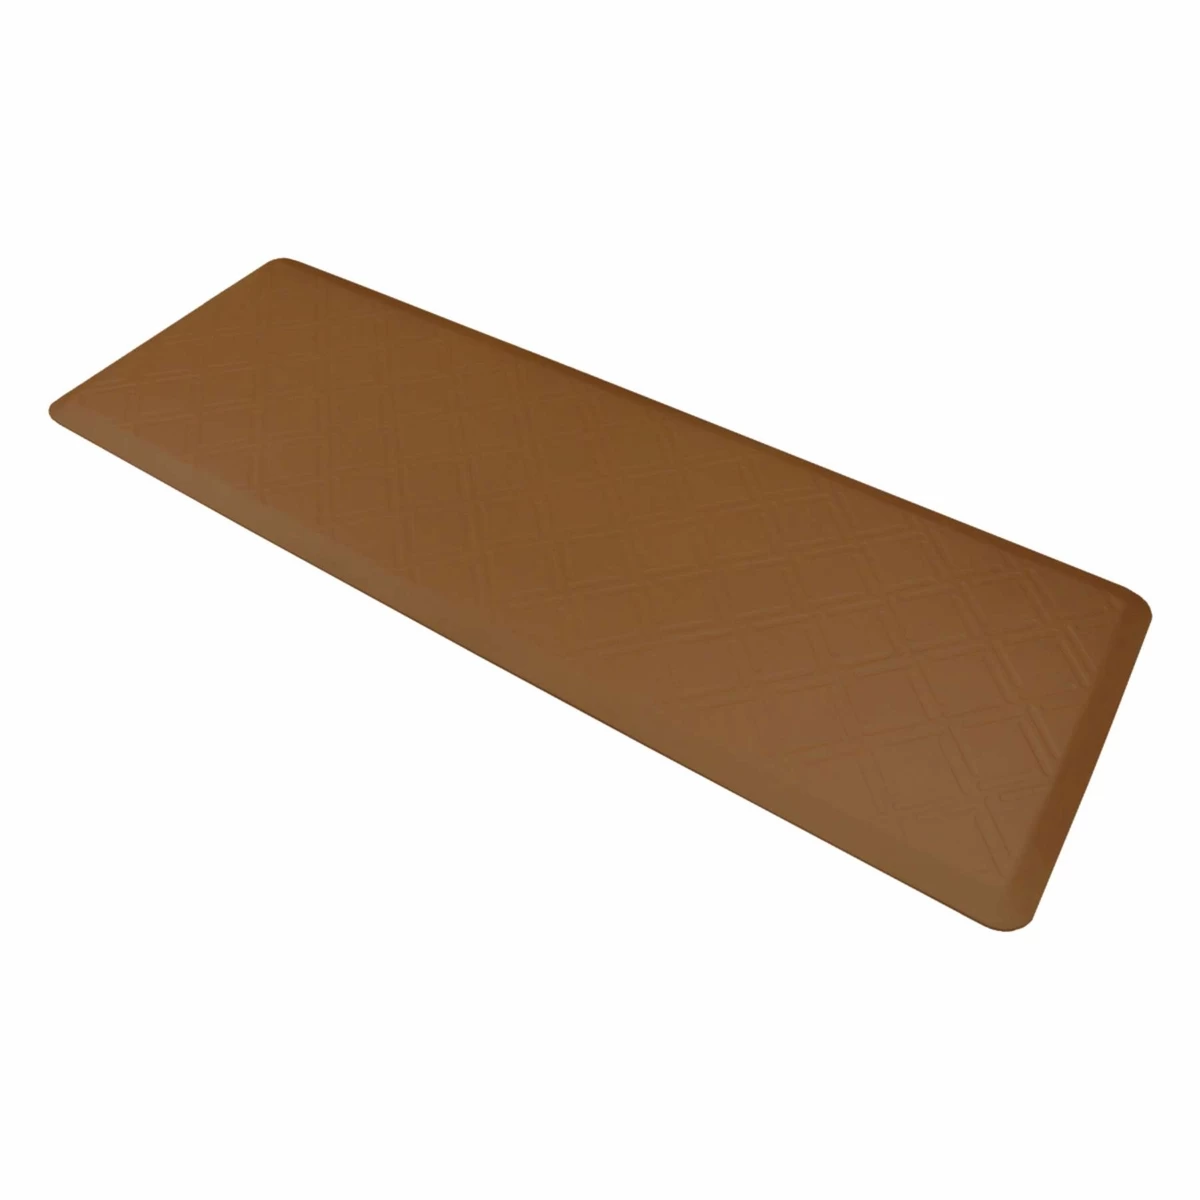 2015 china wholesale top quality comfort mats for kitchen floor washable door mats designer door mats